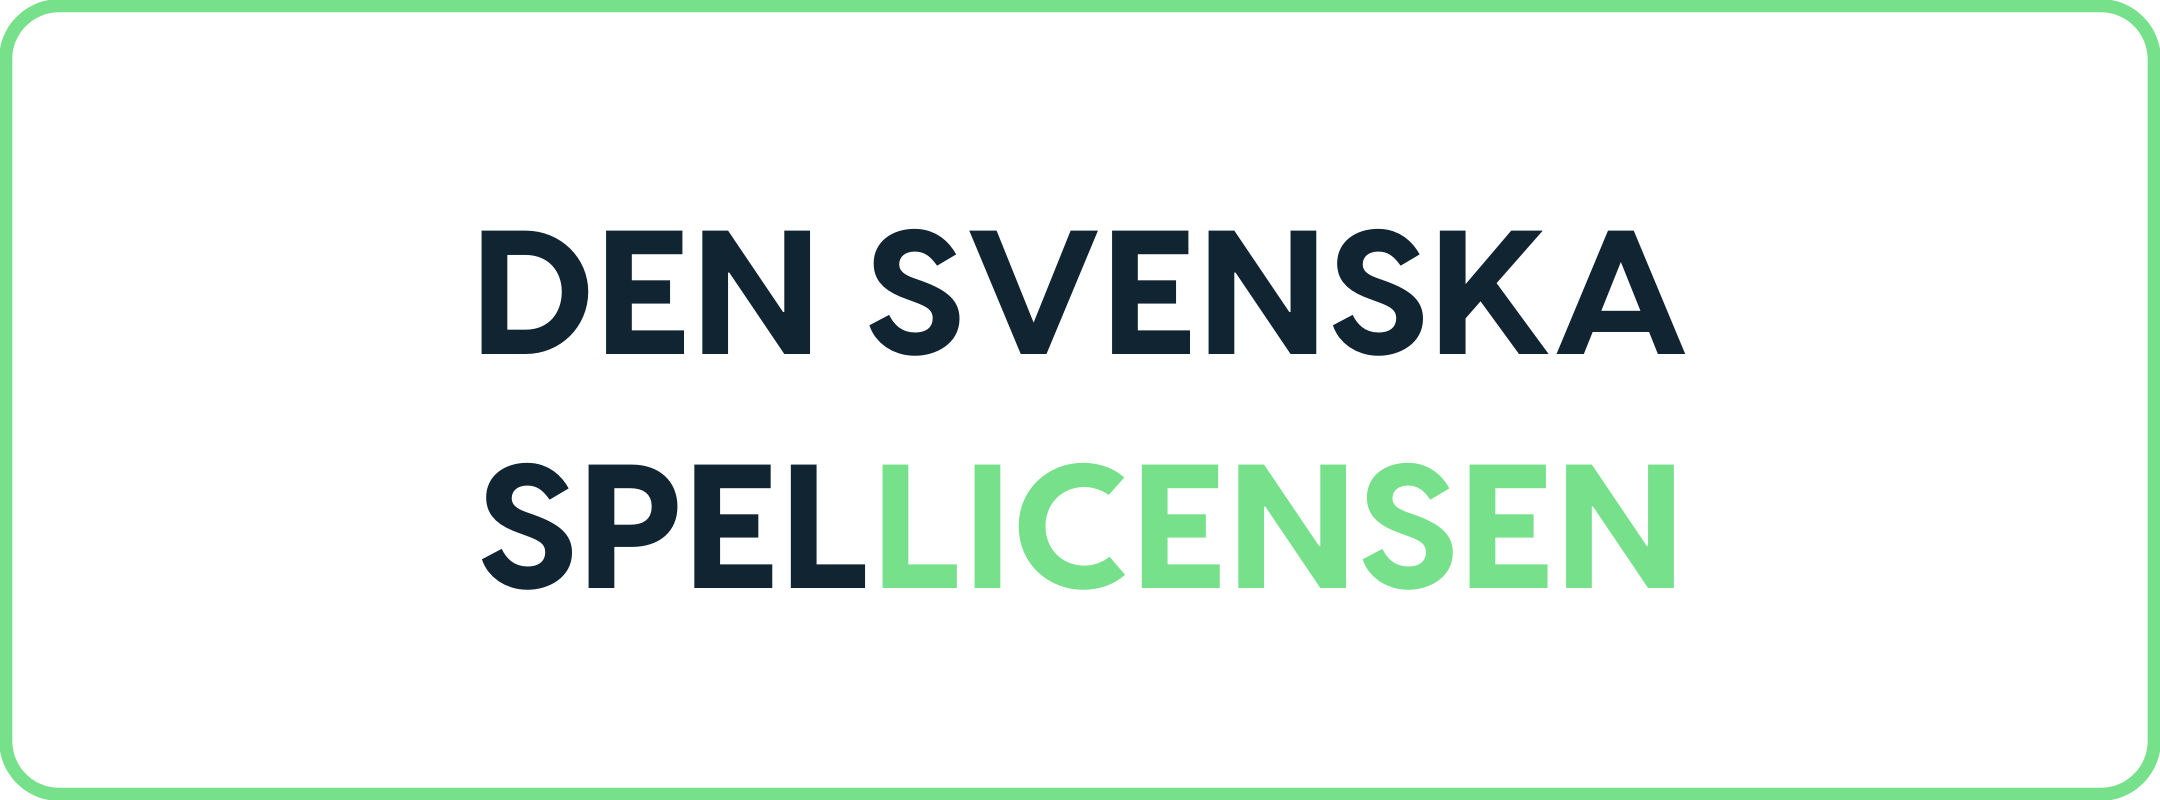 Den svenska licensen